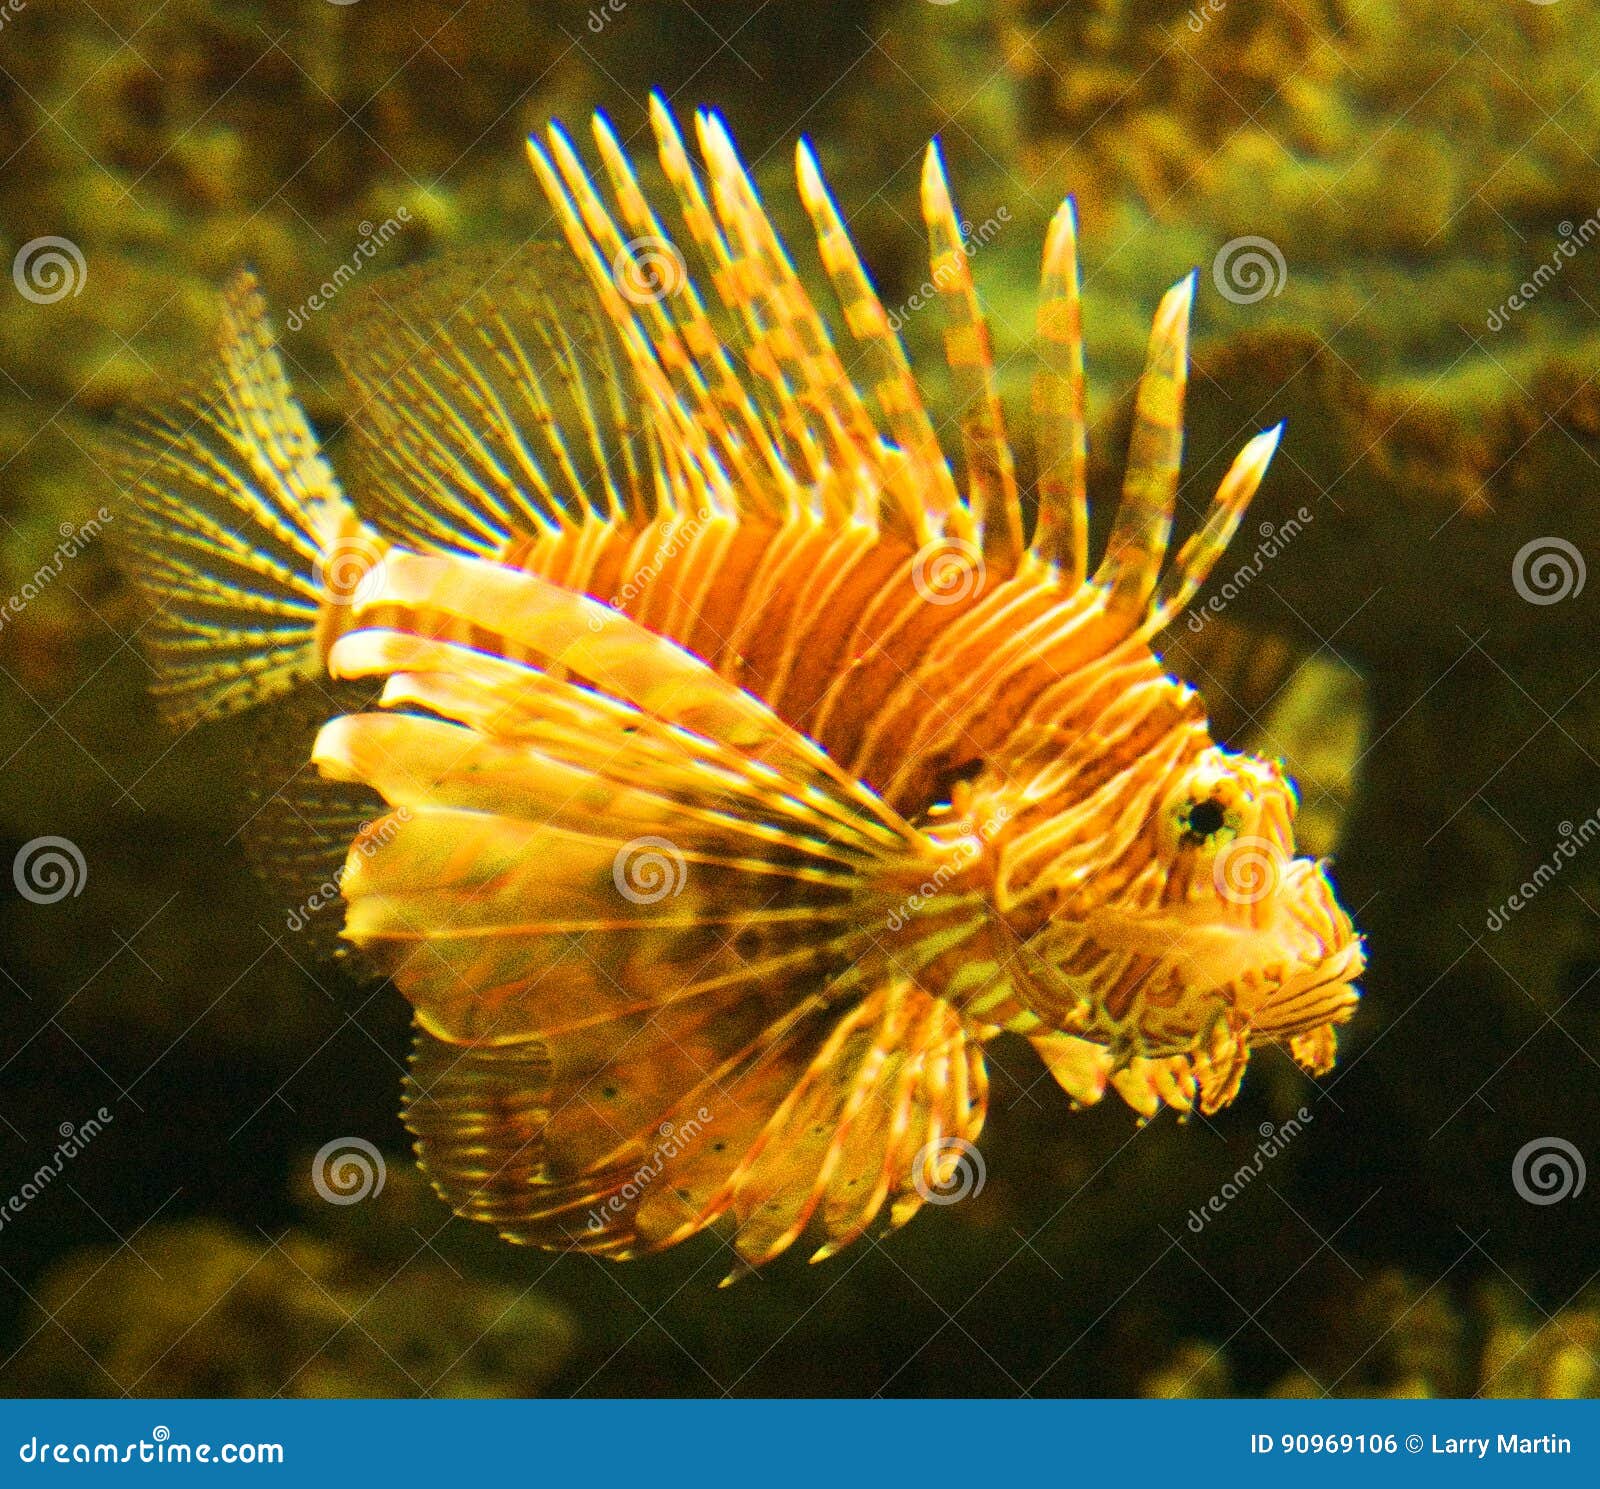 Género Pterois del Lionfish. El rojo o anaranjados y amarillea el lionfish es venenosos, un natural carnívoro de los pescados al Indo-pacífico que ahora es especies invasores en el Atlántico